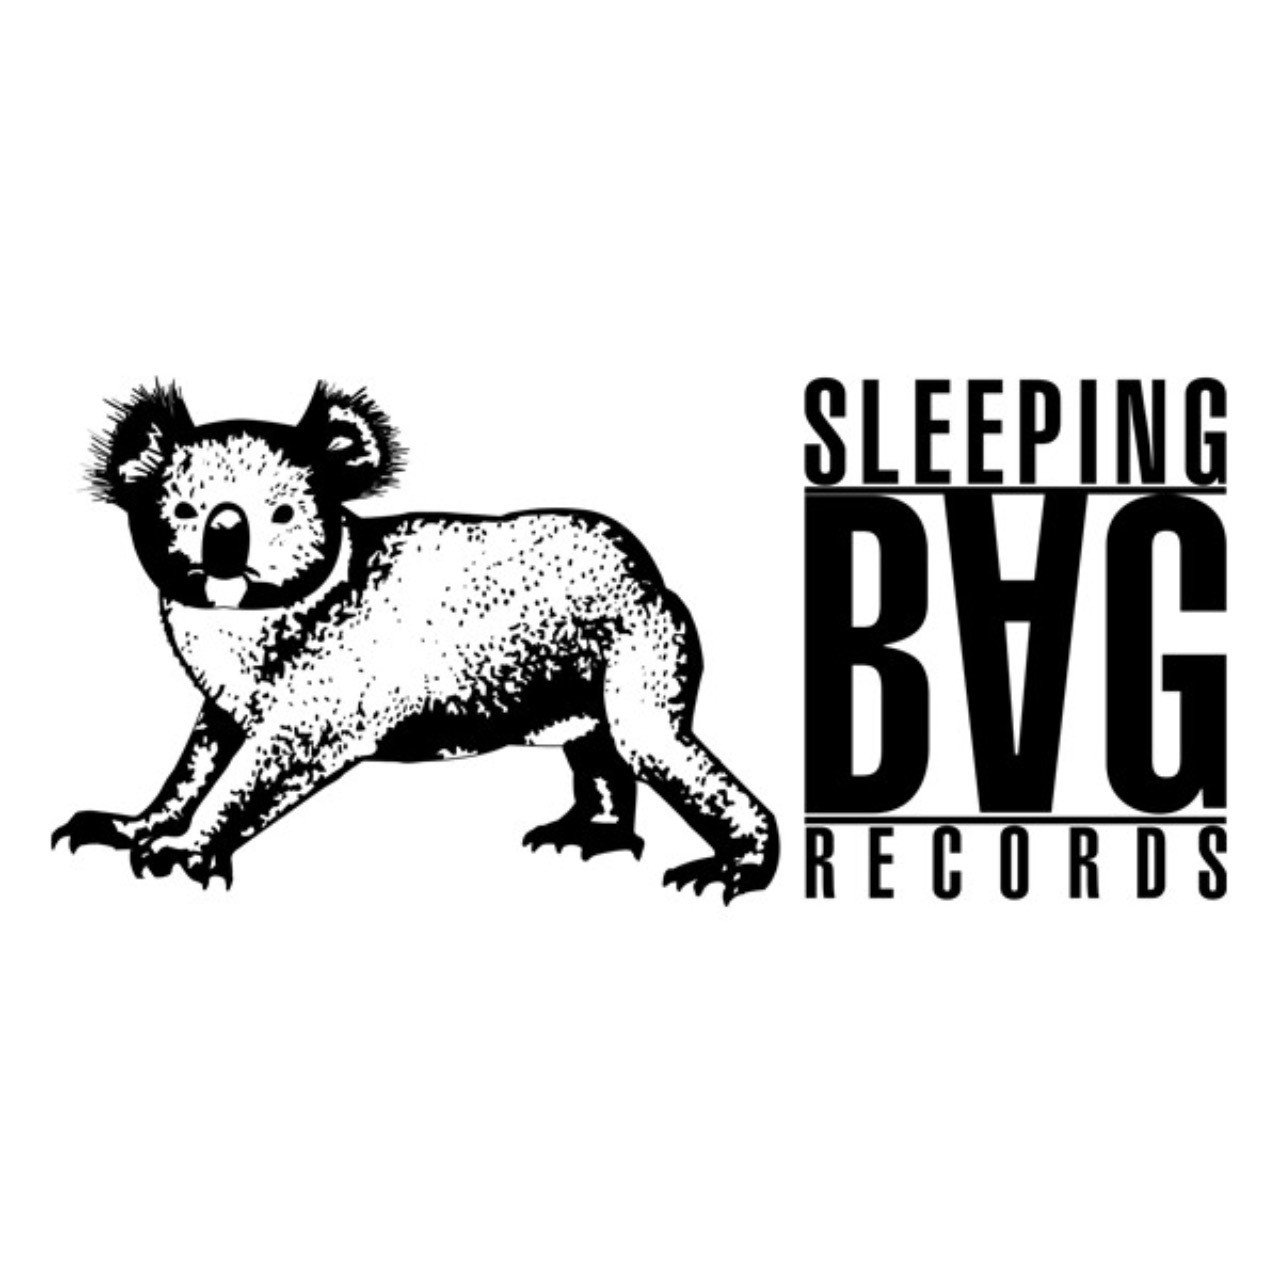 前衛かつ先鋭 Sleeping Bag Records Delic Records イシヤマヨシアキ Note